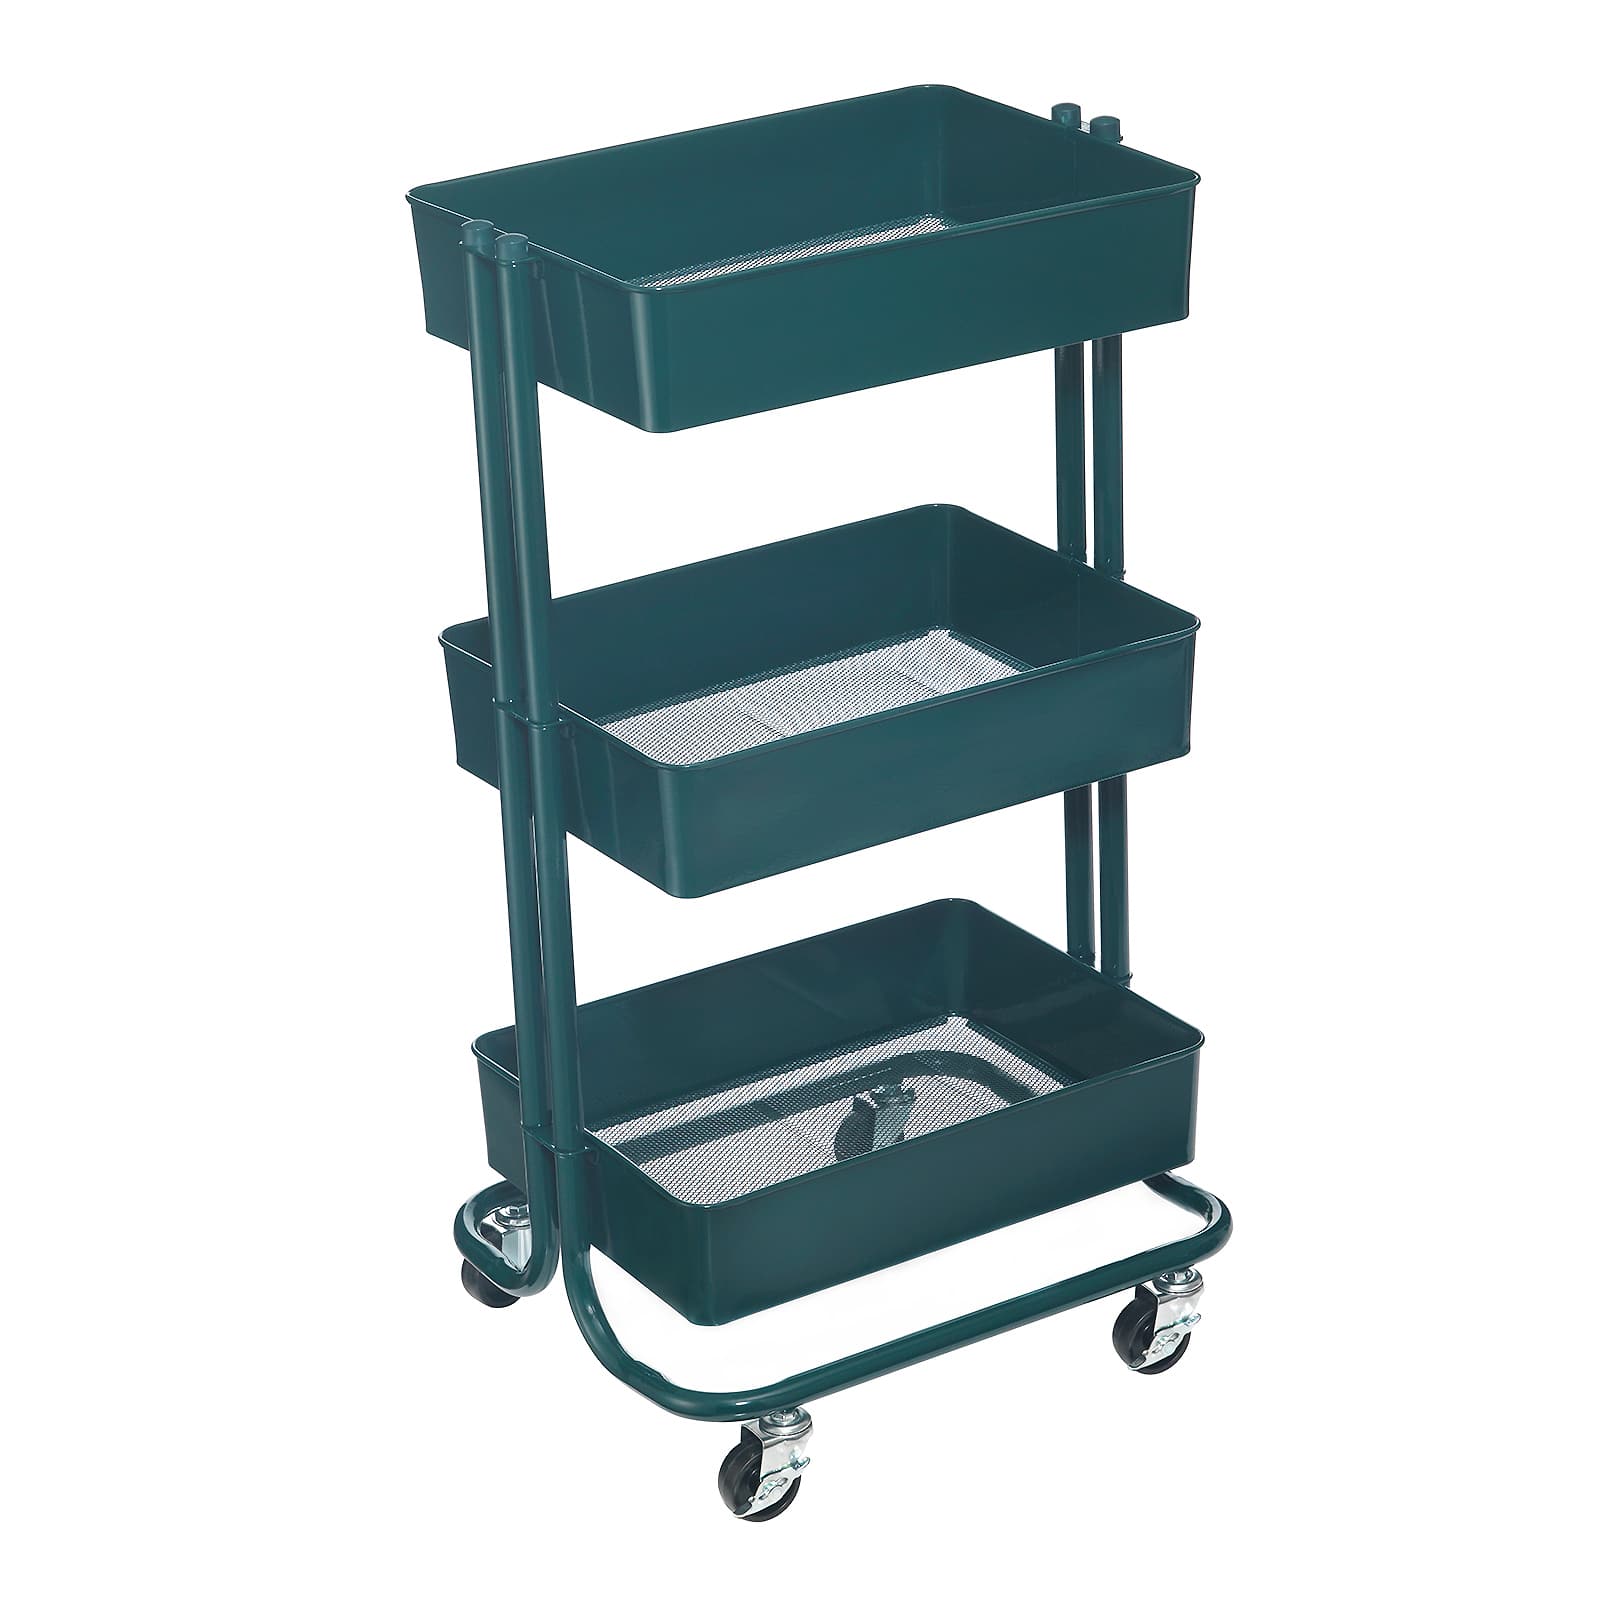 Assembling Cricut Maker Utility Shelf + Planner Storage Cart